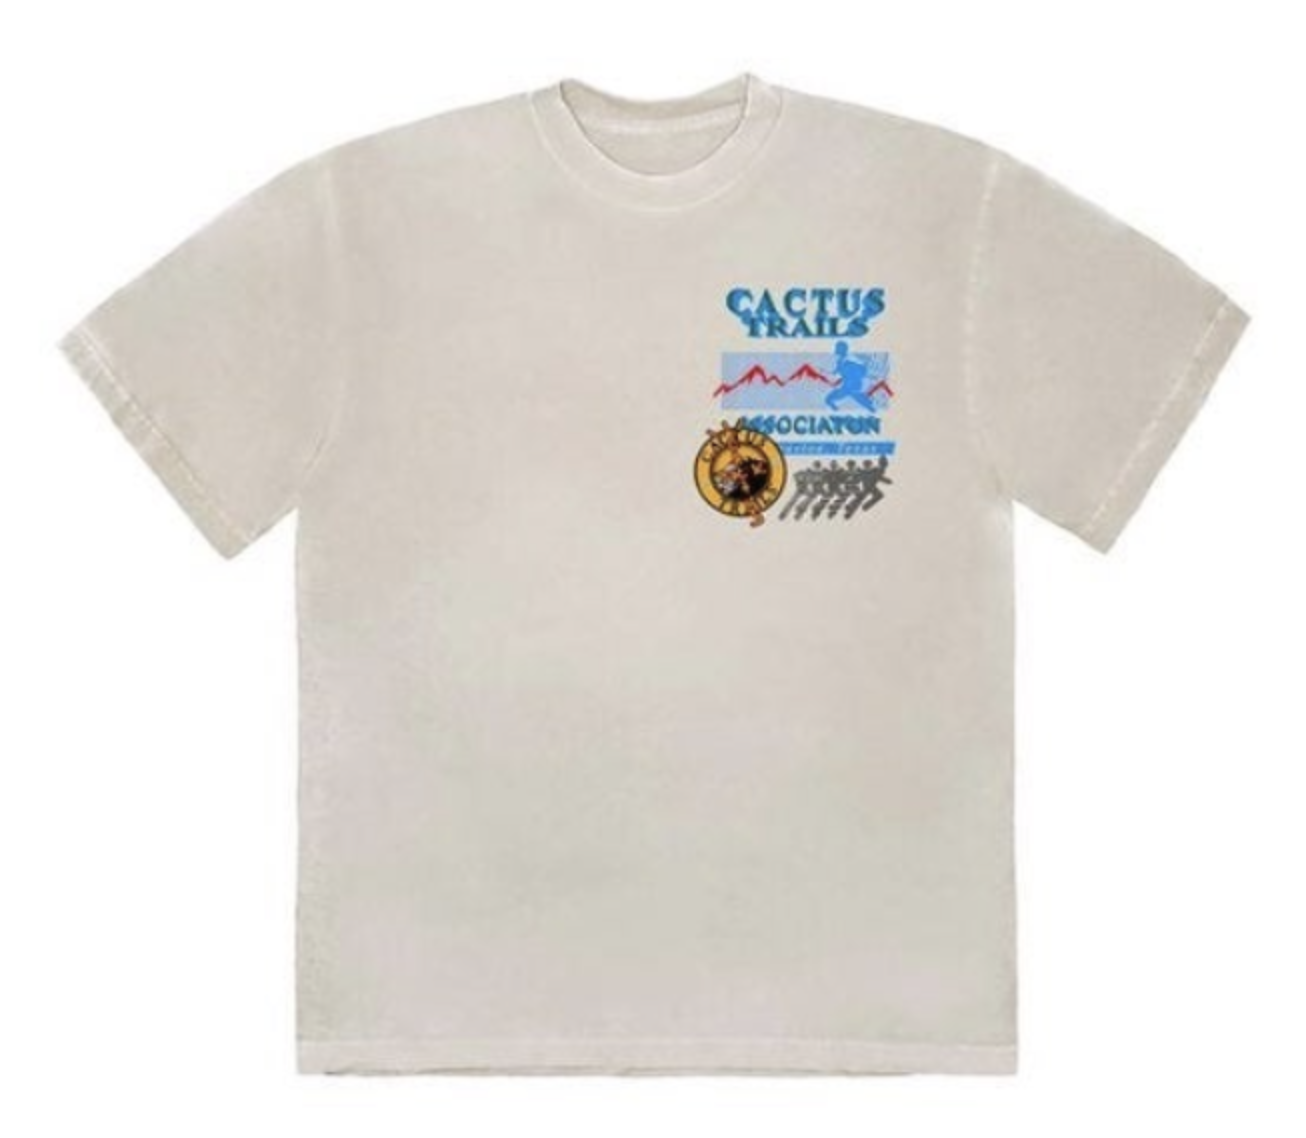 Travis Scott Cactus Trails Assn T-Shirt Cream - SS20 Men's - US